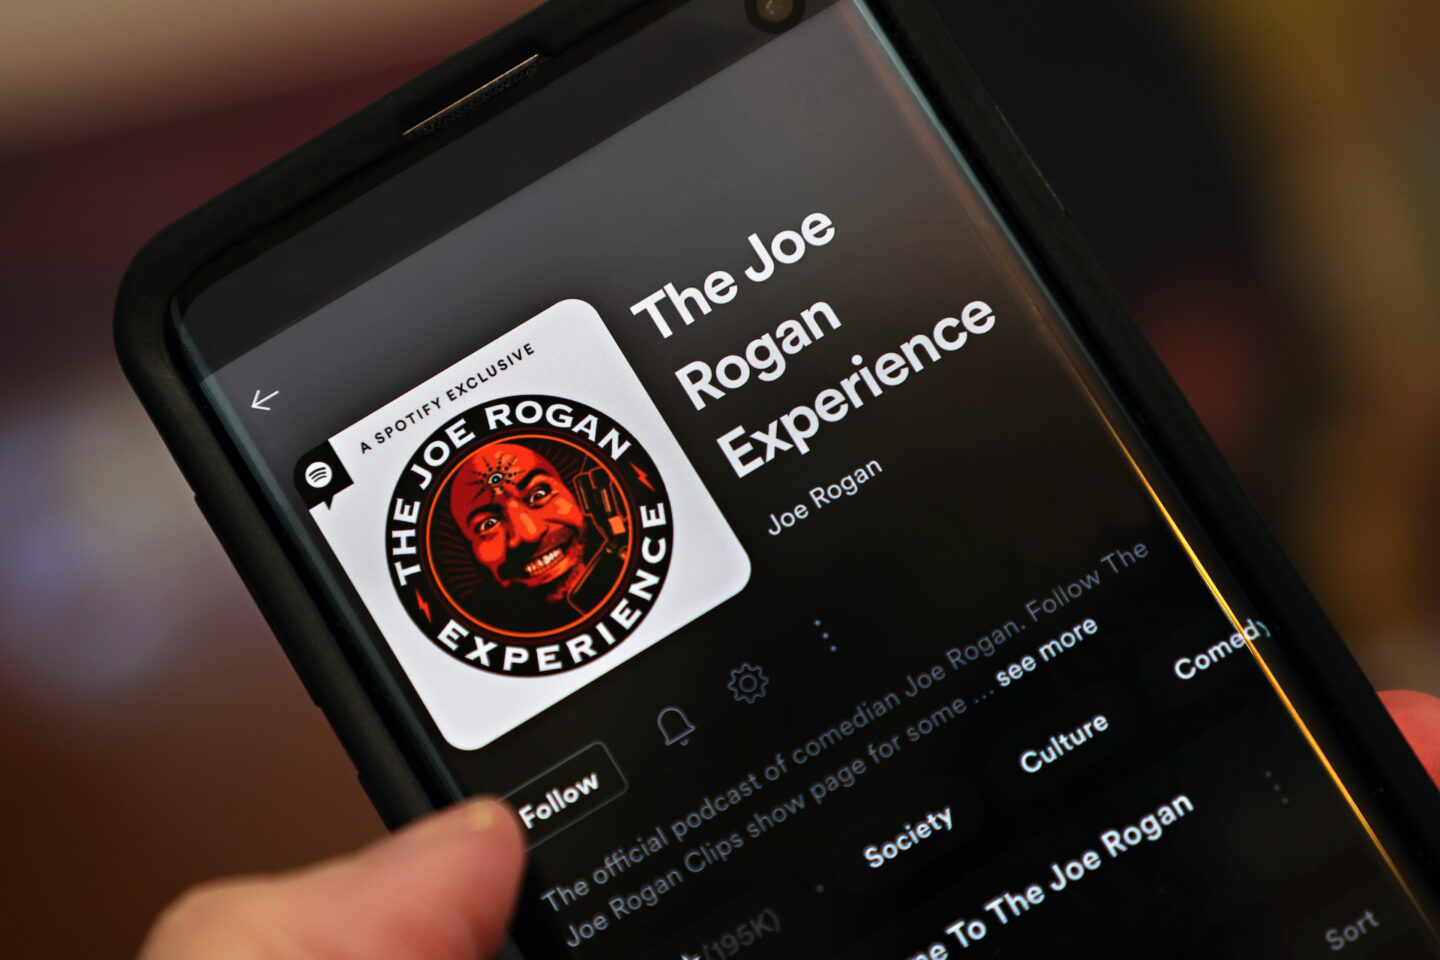 Joe Rogan Experience podcast Spotify